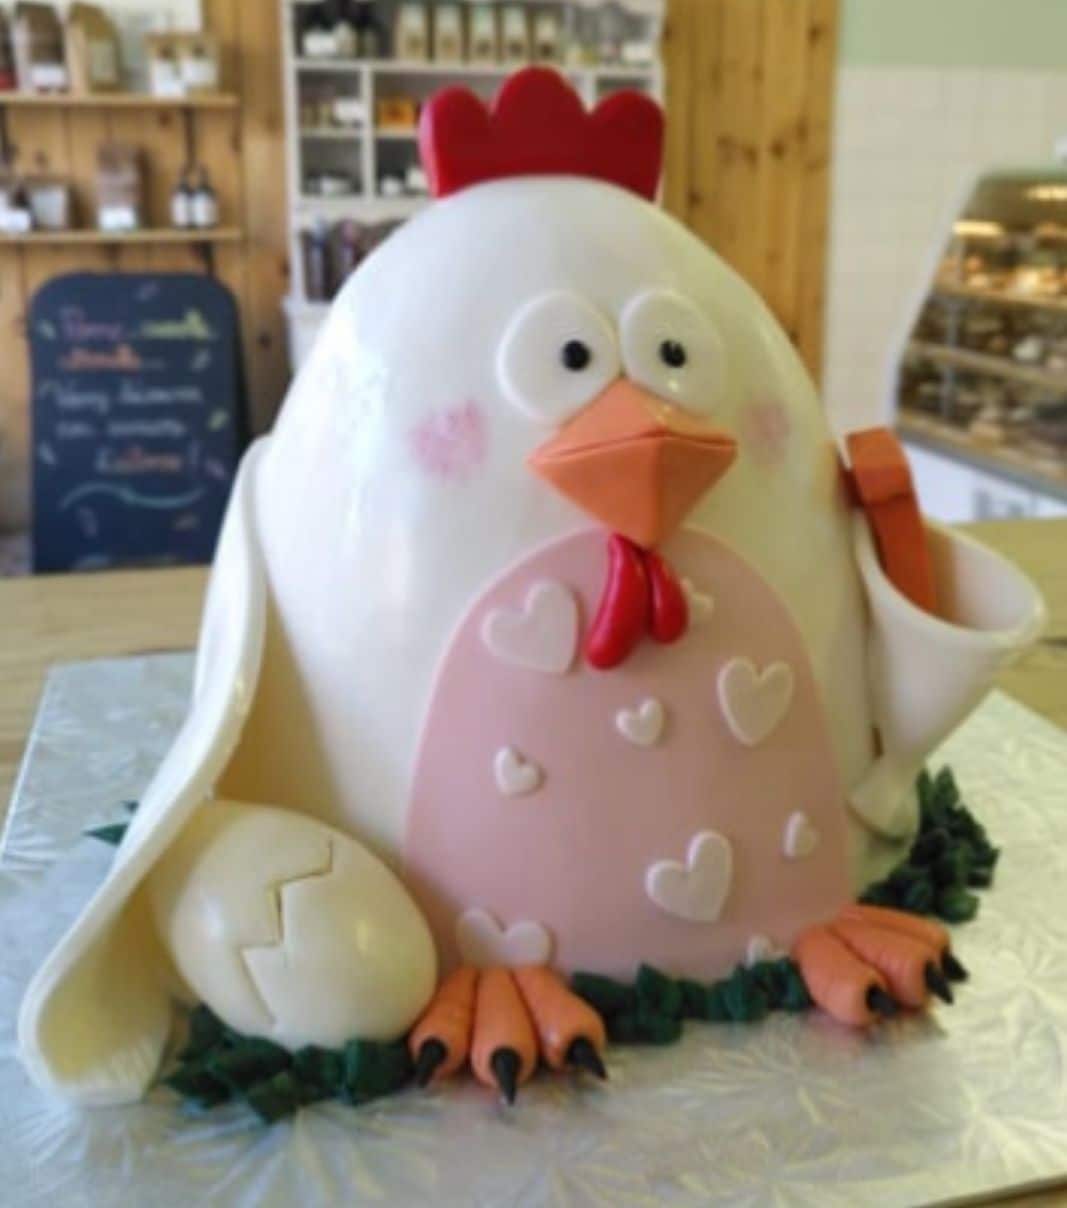 Gâteau d'anniversaire sur mesure de Charlotte: gâteau en forme de poulet en 3D avec une couverture en fondant et décoré d'un œuf en fondant.